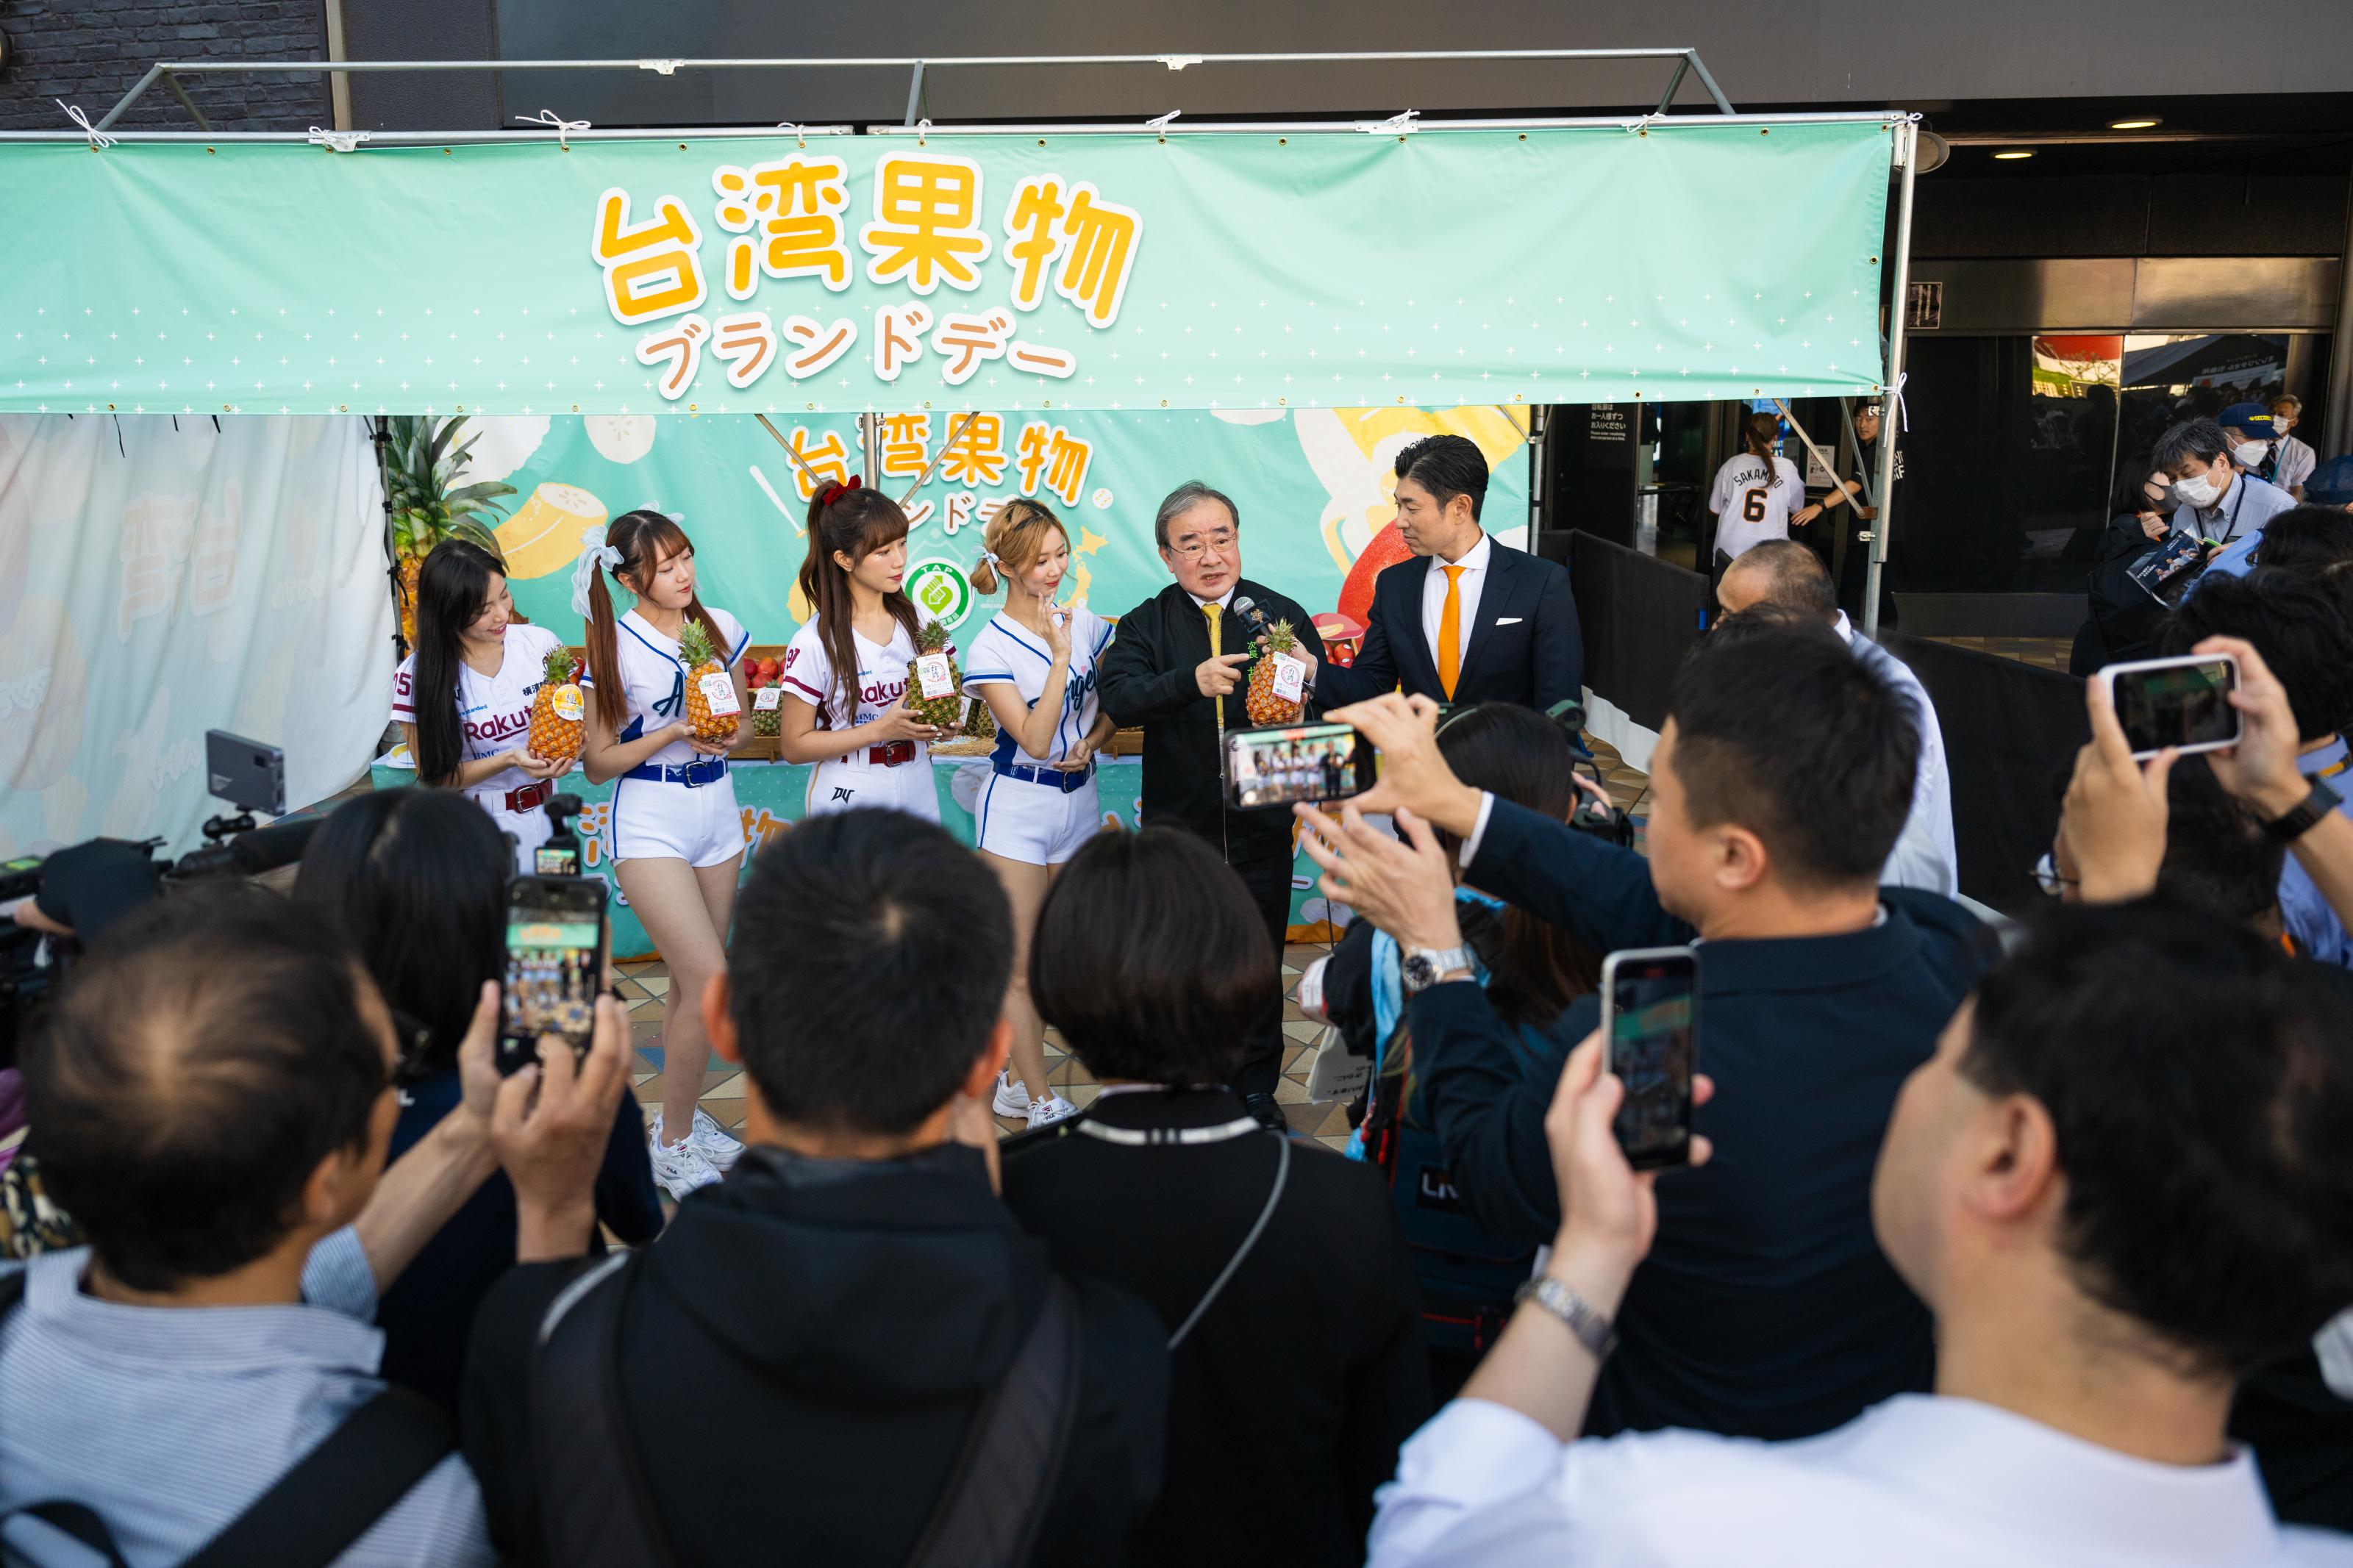 胡忠一（右2）於東京巨蛋前廣場設置攤位介紹台灣水果，吸引日本民眾圍觀。圖/農業部網站